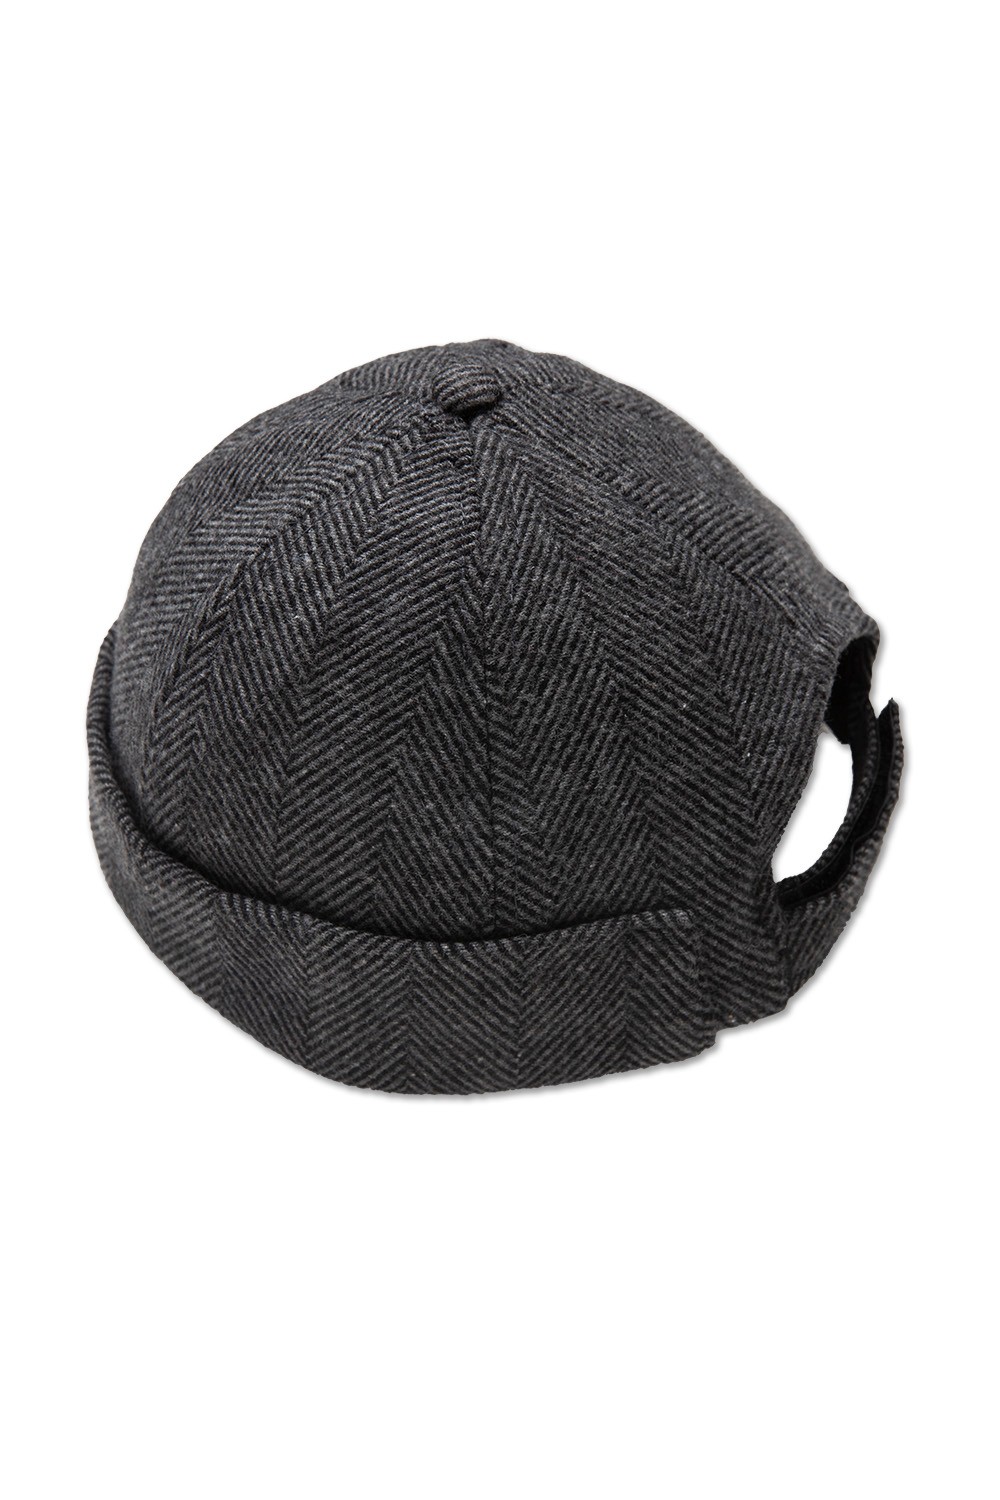 Kışlık Balıkçı Şapka - Gri Siyah